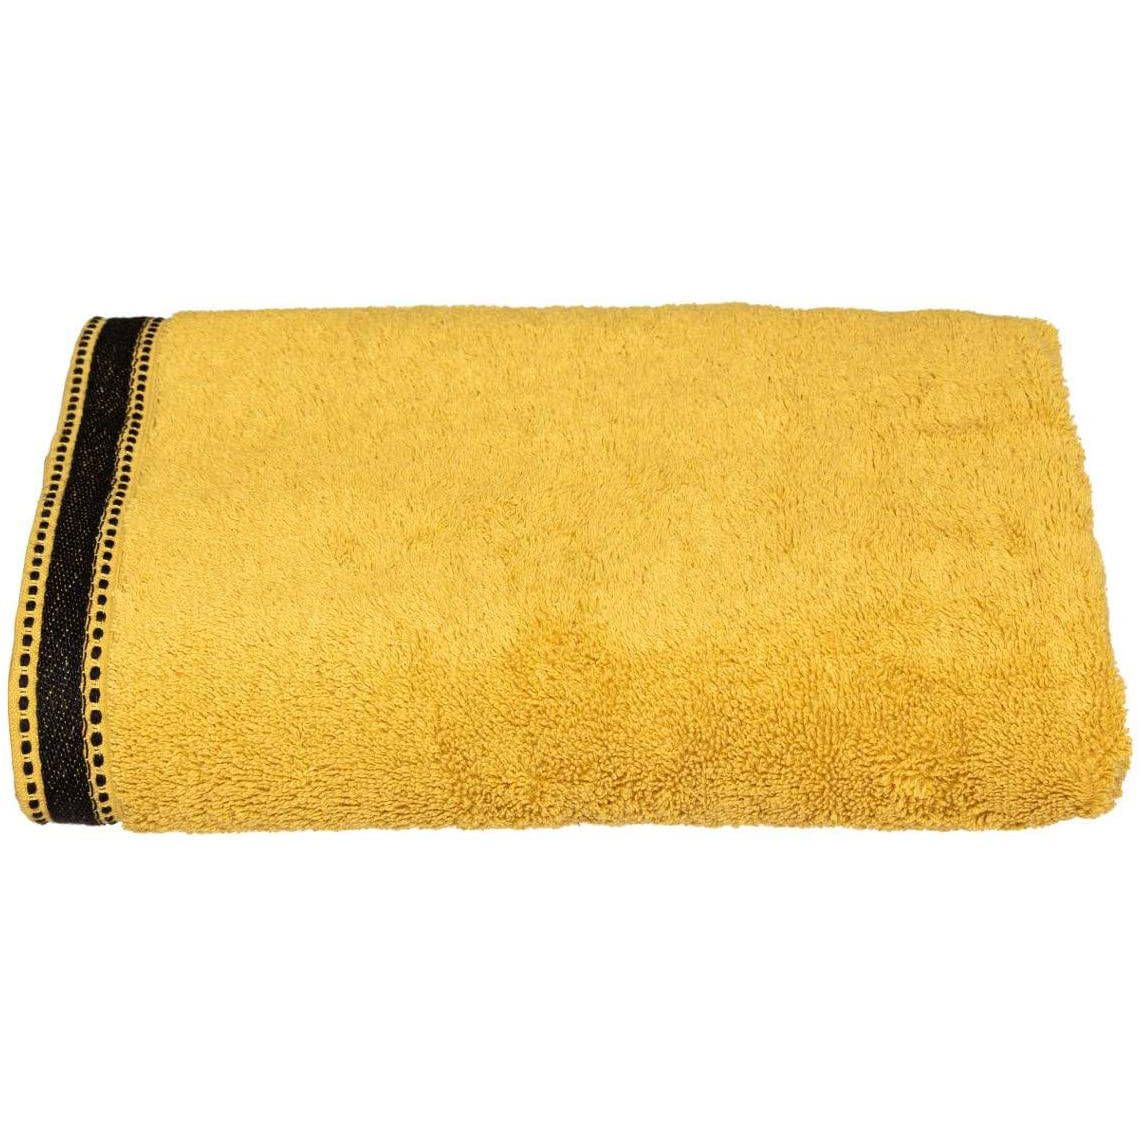 Atmosphera Bavlněný ručník do koupelny JOIA, 70 x 130 cm, žlutá barva - EDAXO.CZ s.r.o.